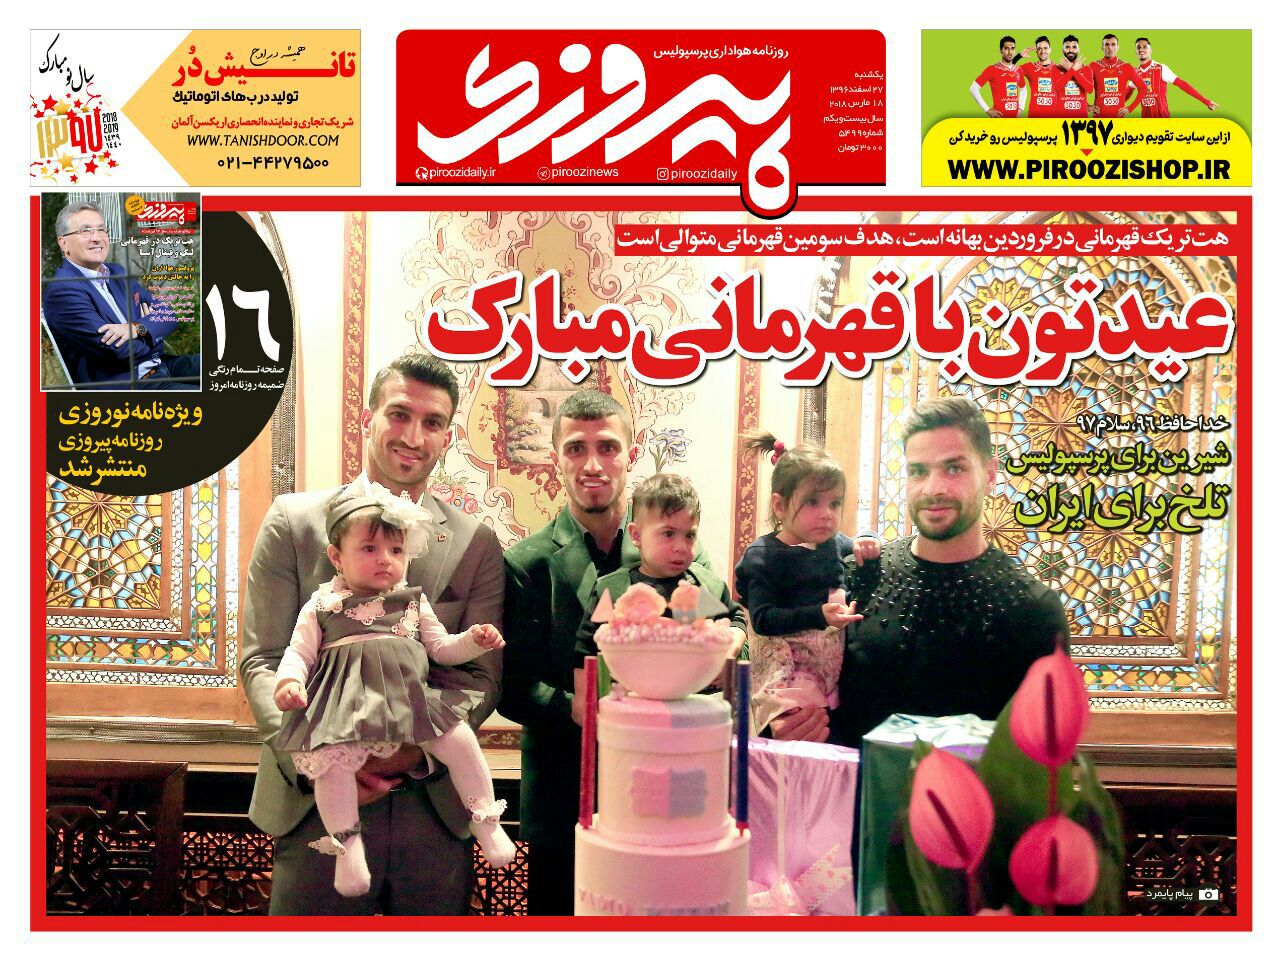 جلد آخرین شماره روزنامه پیروزی در سال  96_یکشنبه 26 اسفند